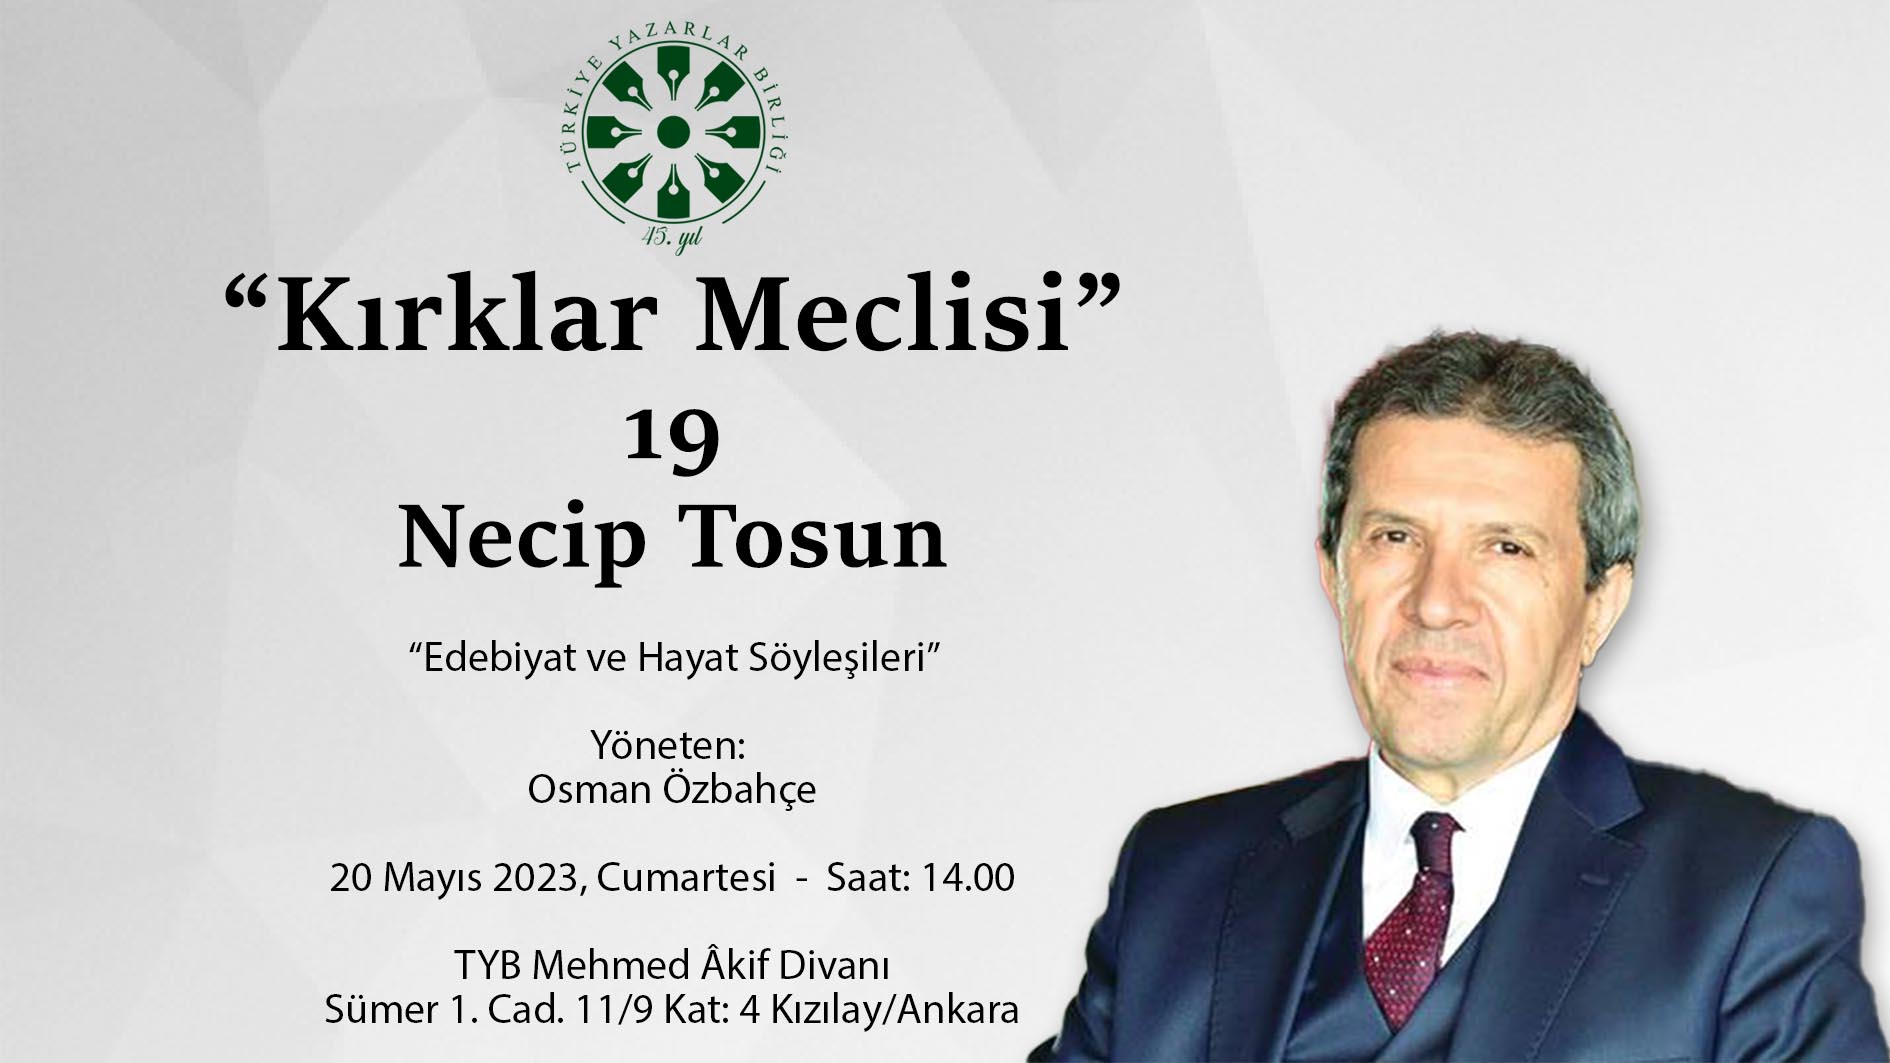 Yazar Necip Tosun Kırklar Meclisi’nde konuşacak